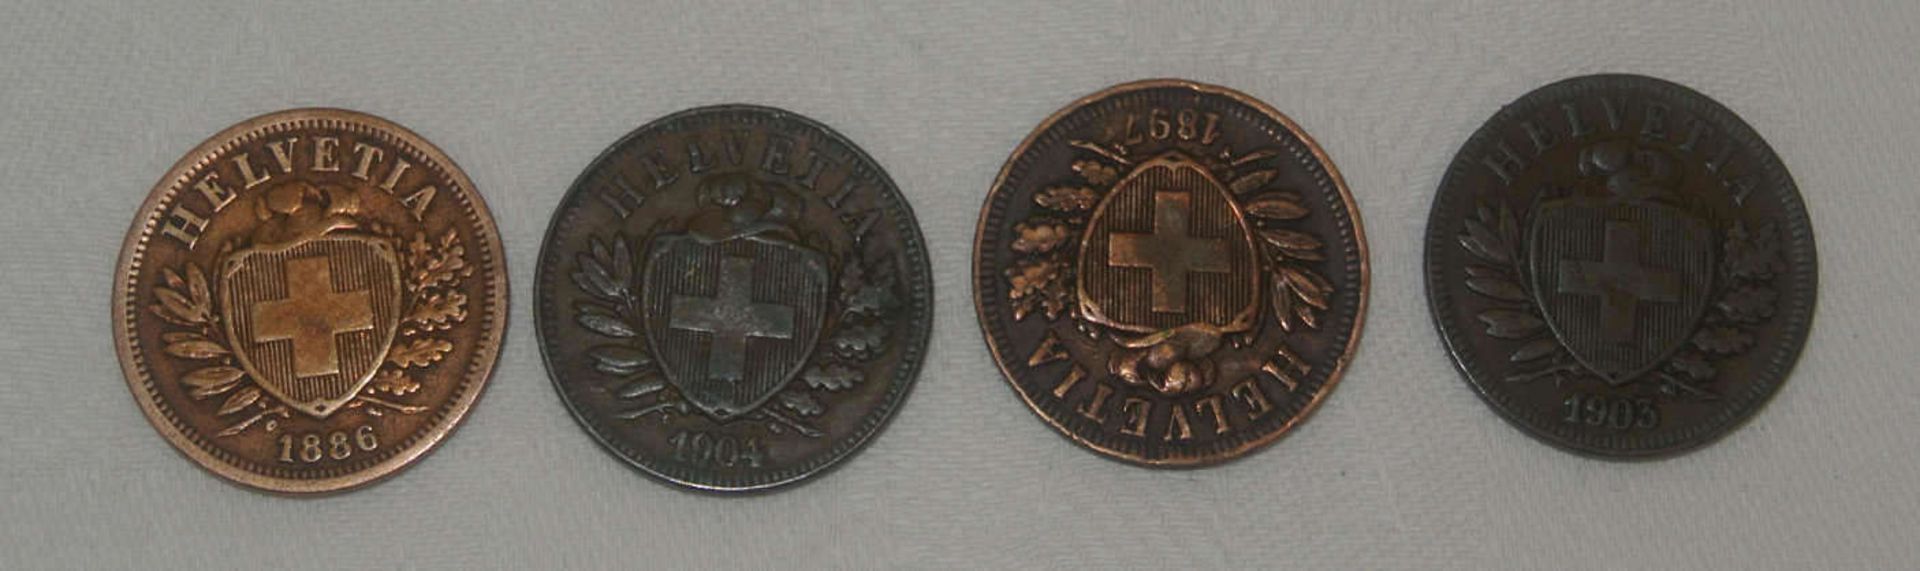 Lot von 2 Rappen - Stücken, dabei 1886 vz, 1904ss, 1897 ss+, 1903 ss. Besichtigung empfohlen. - Bild 2 aus 2